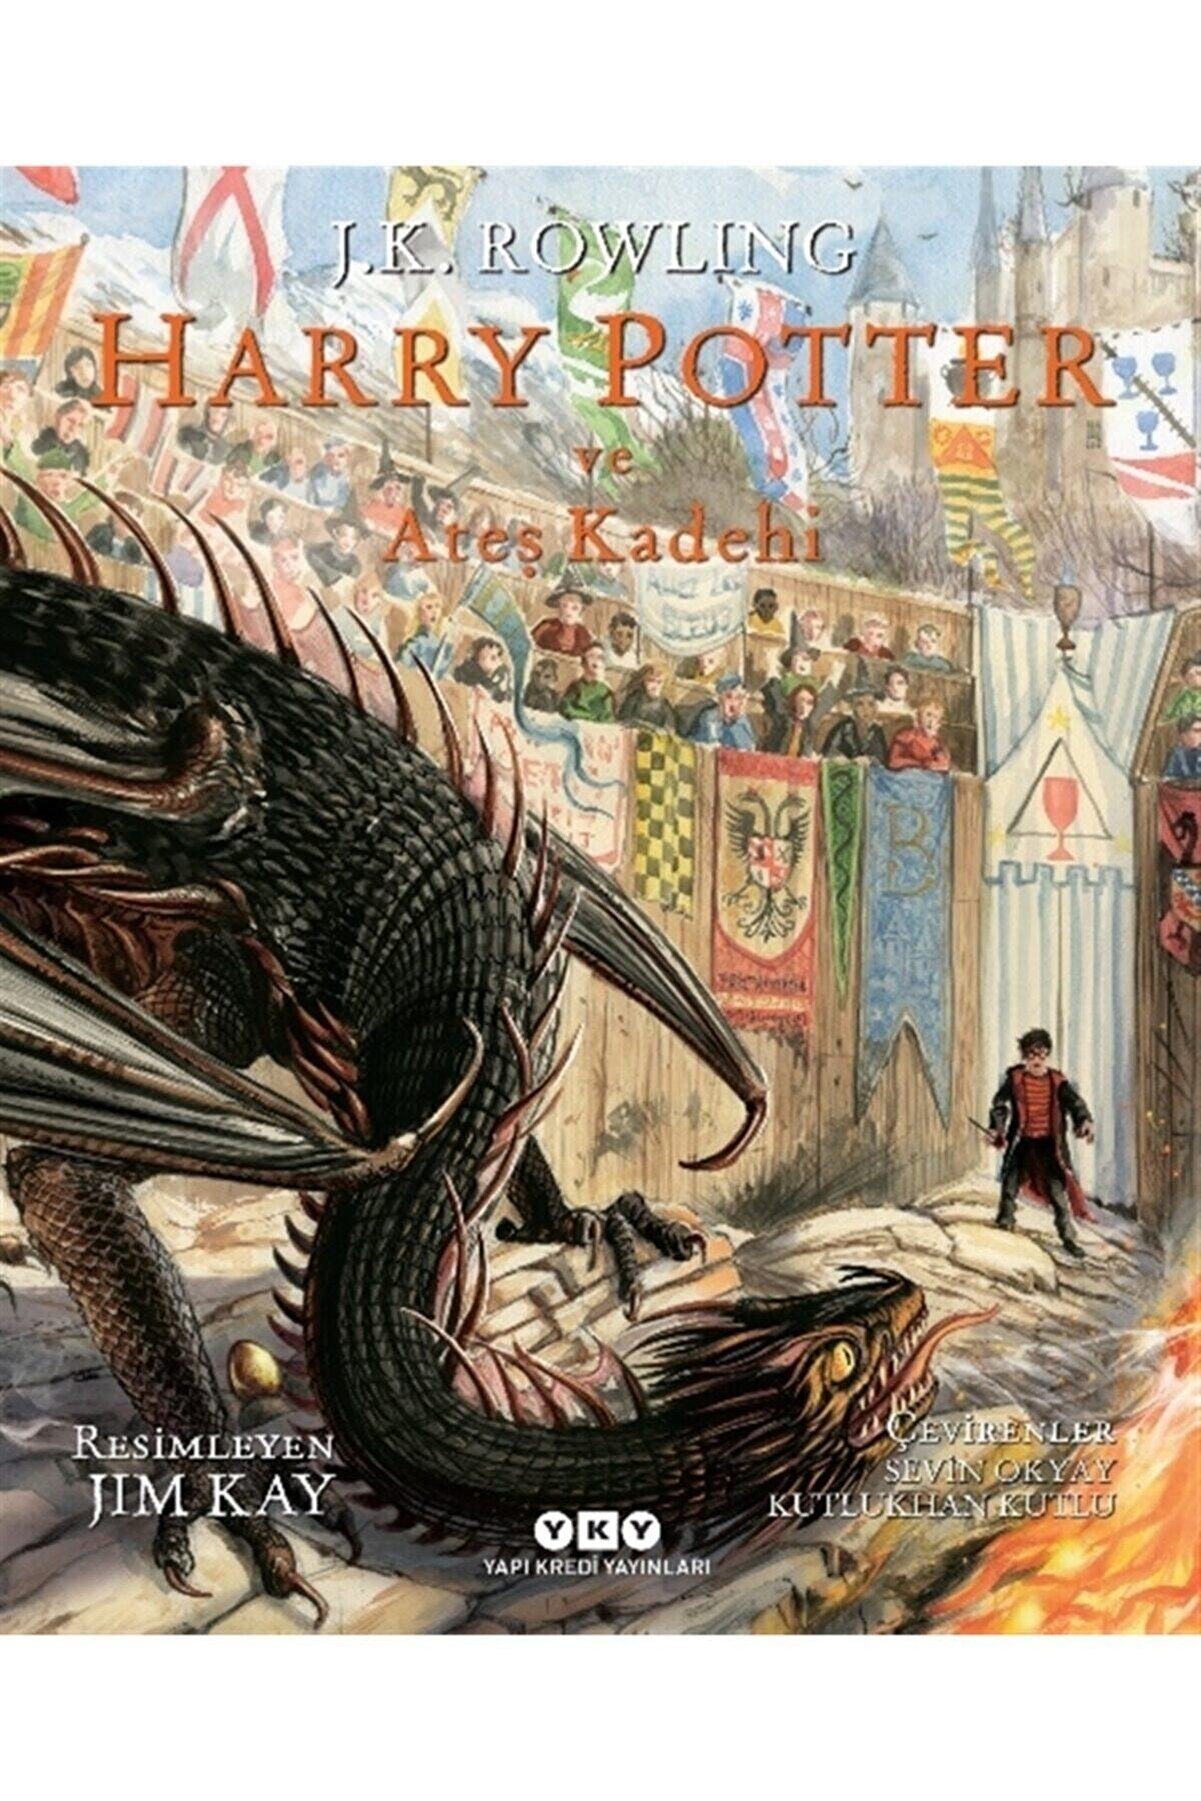 Yapı Kredi Yayınları Harry Potter Ve Ateş Kadehi 4 (resimli Özel Baskı) - J. K. Rowling 9789750848360